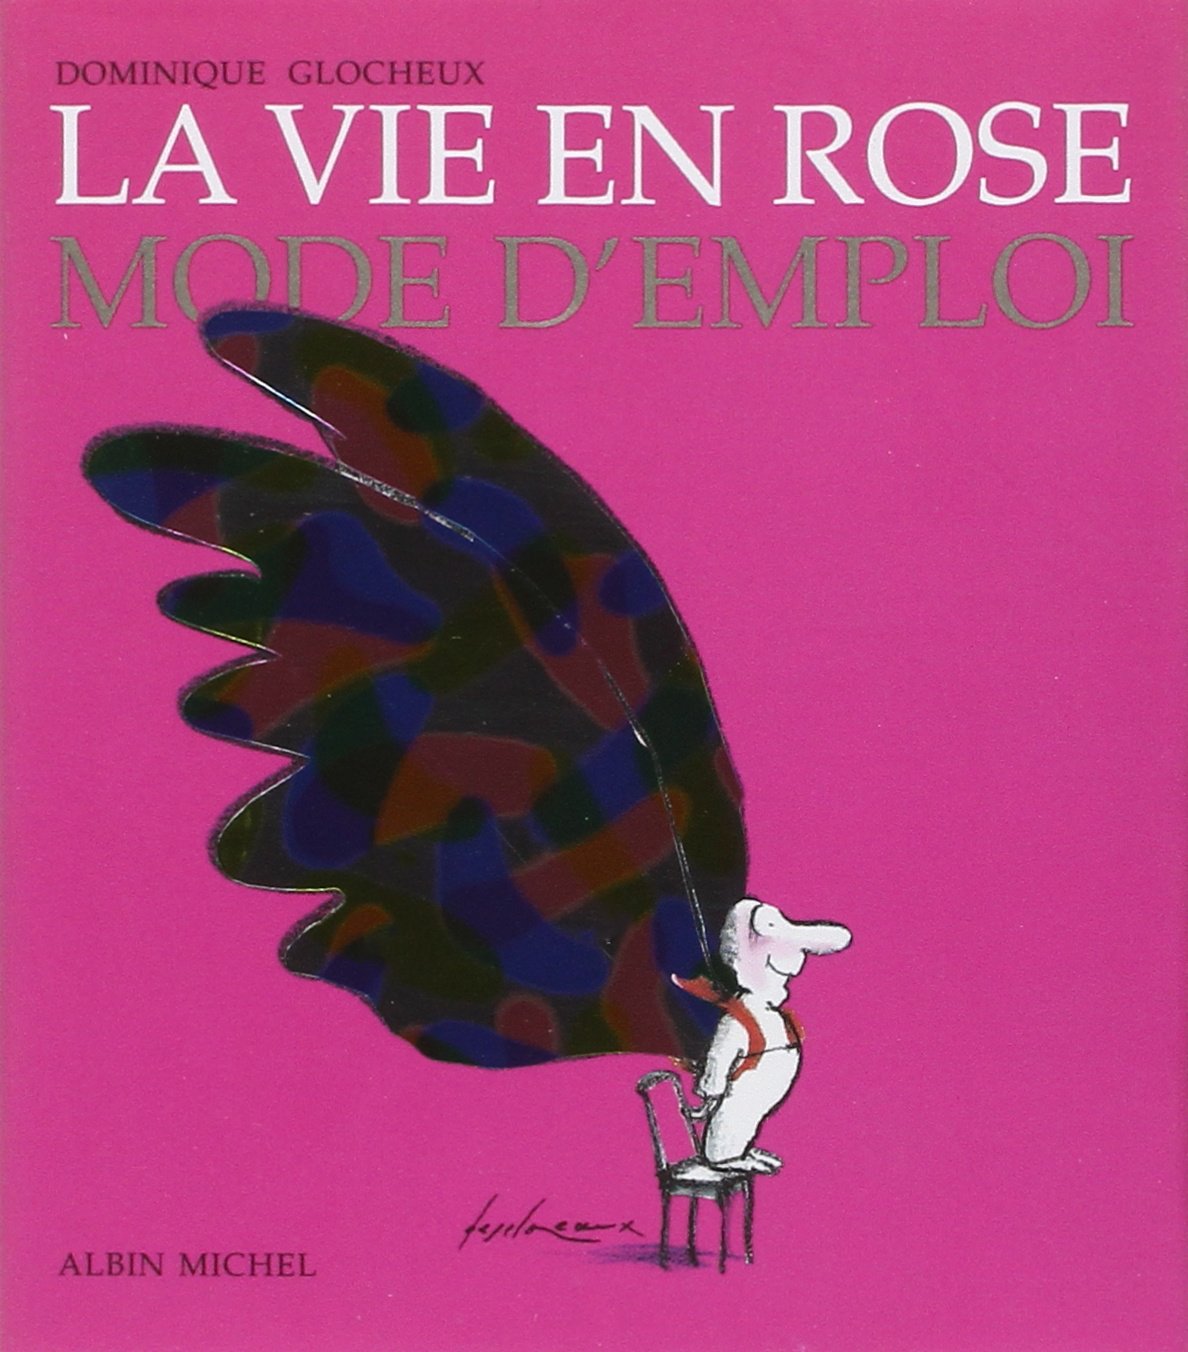 Livre ISBN 2226090231 La vie en rose mode d'emploi (Dominique Glocheux)